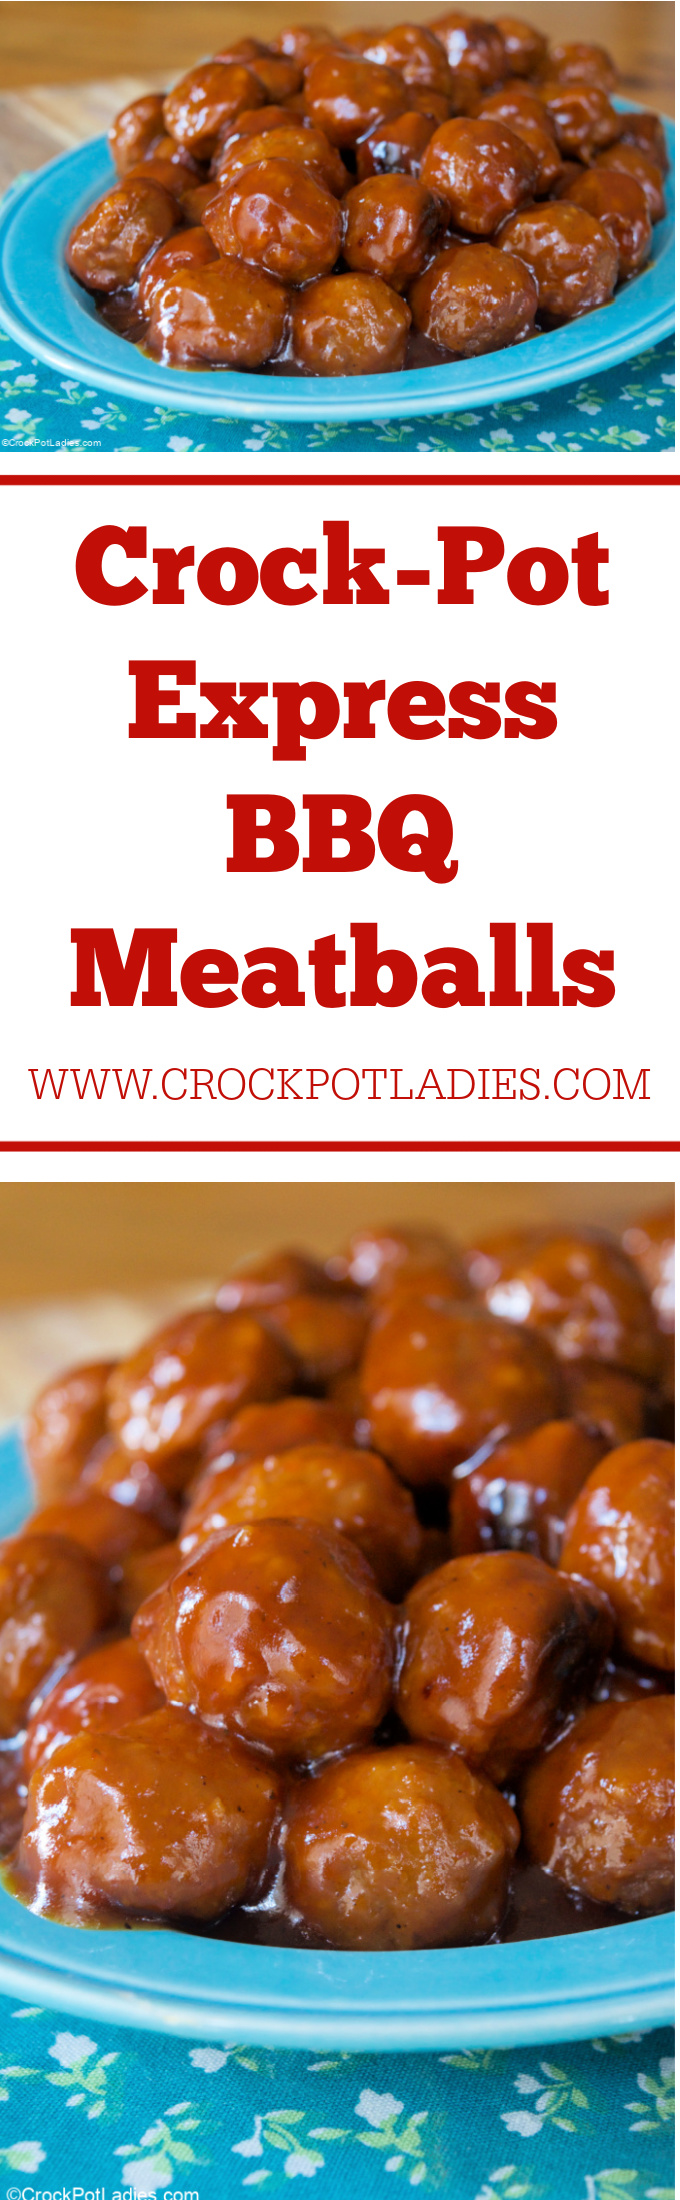 Crock-Pot Express BBQ Meatballs